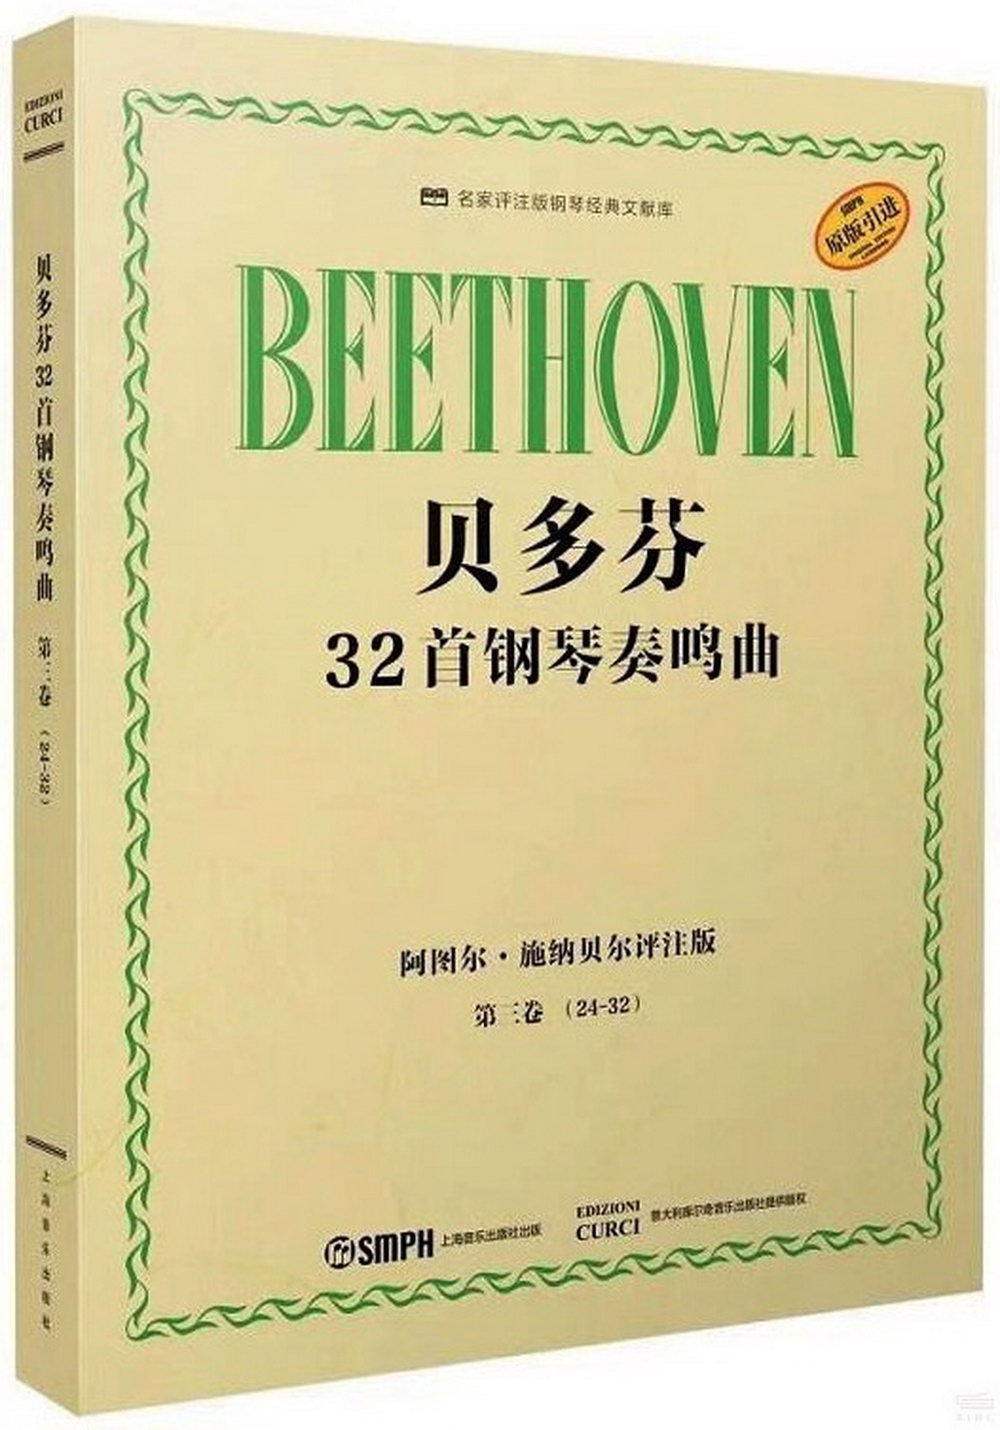 貝多芬32首鋼琴奏鳴曲：第三卷(24-32)(阿圖爾·施納貝爾評註版)